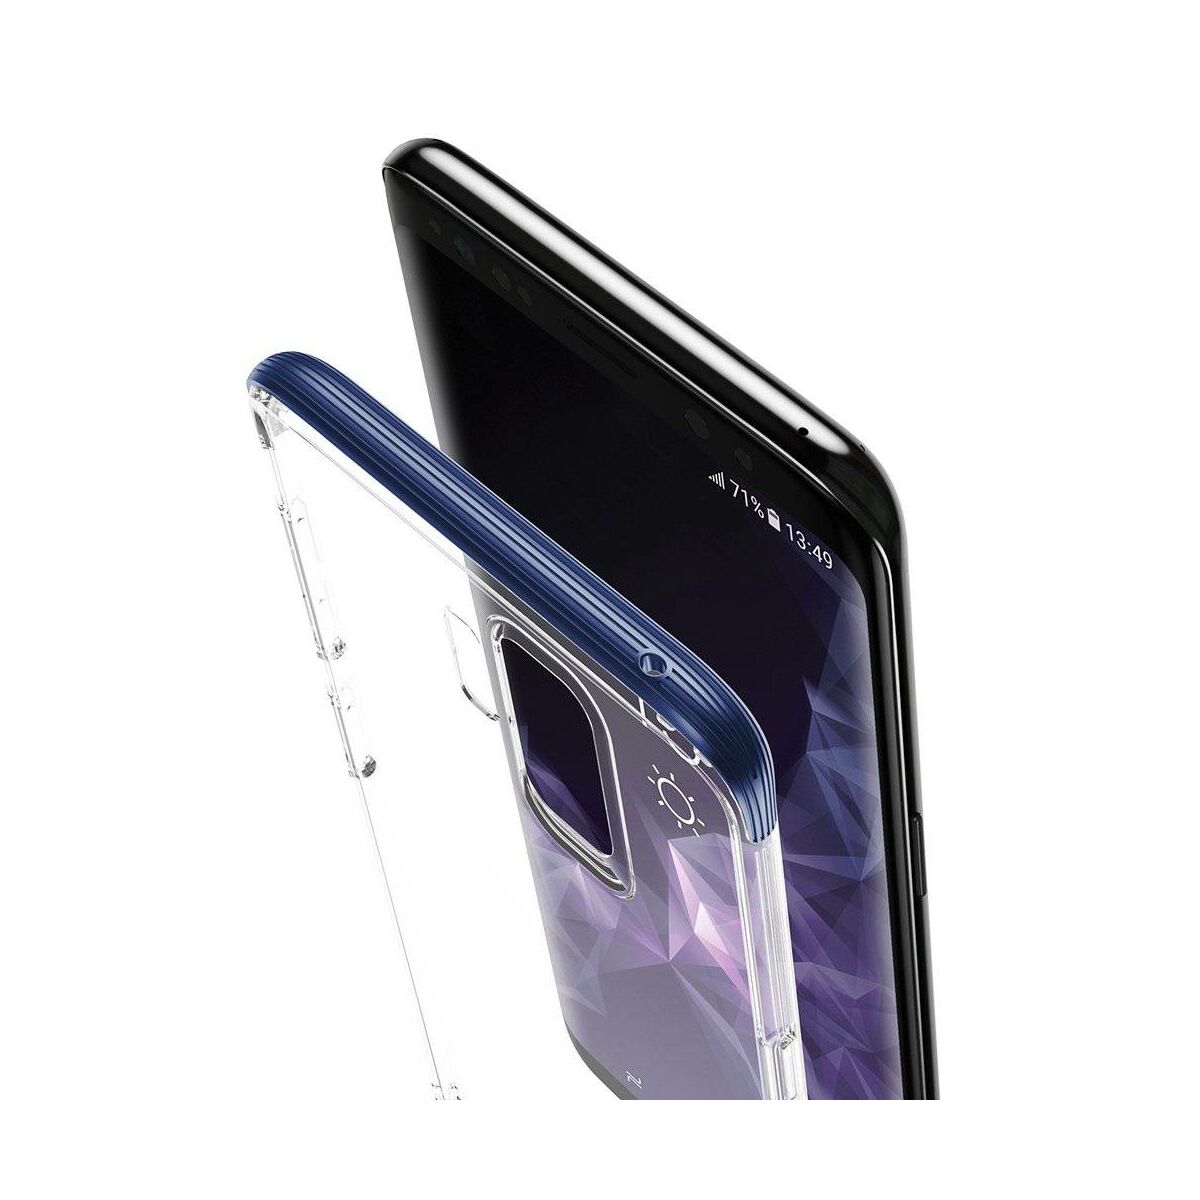 Baseus Samsung S9 Plus tok, Armor, kék (WISAS9P-YJ03)